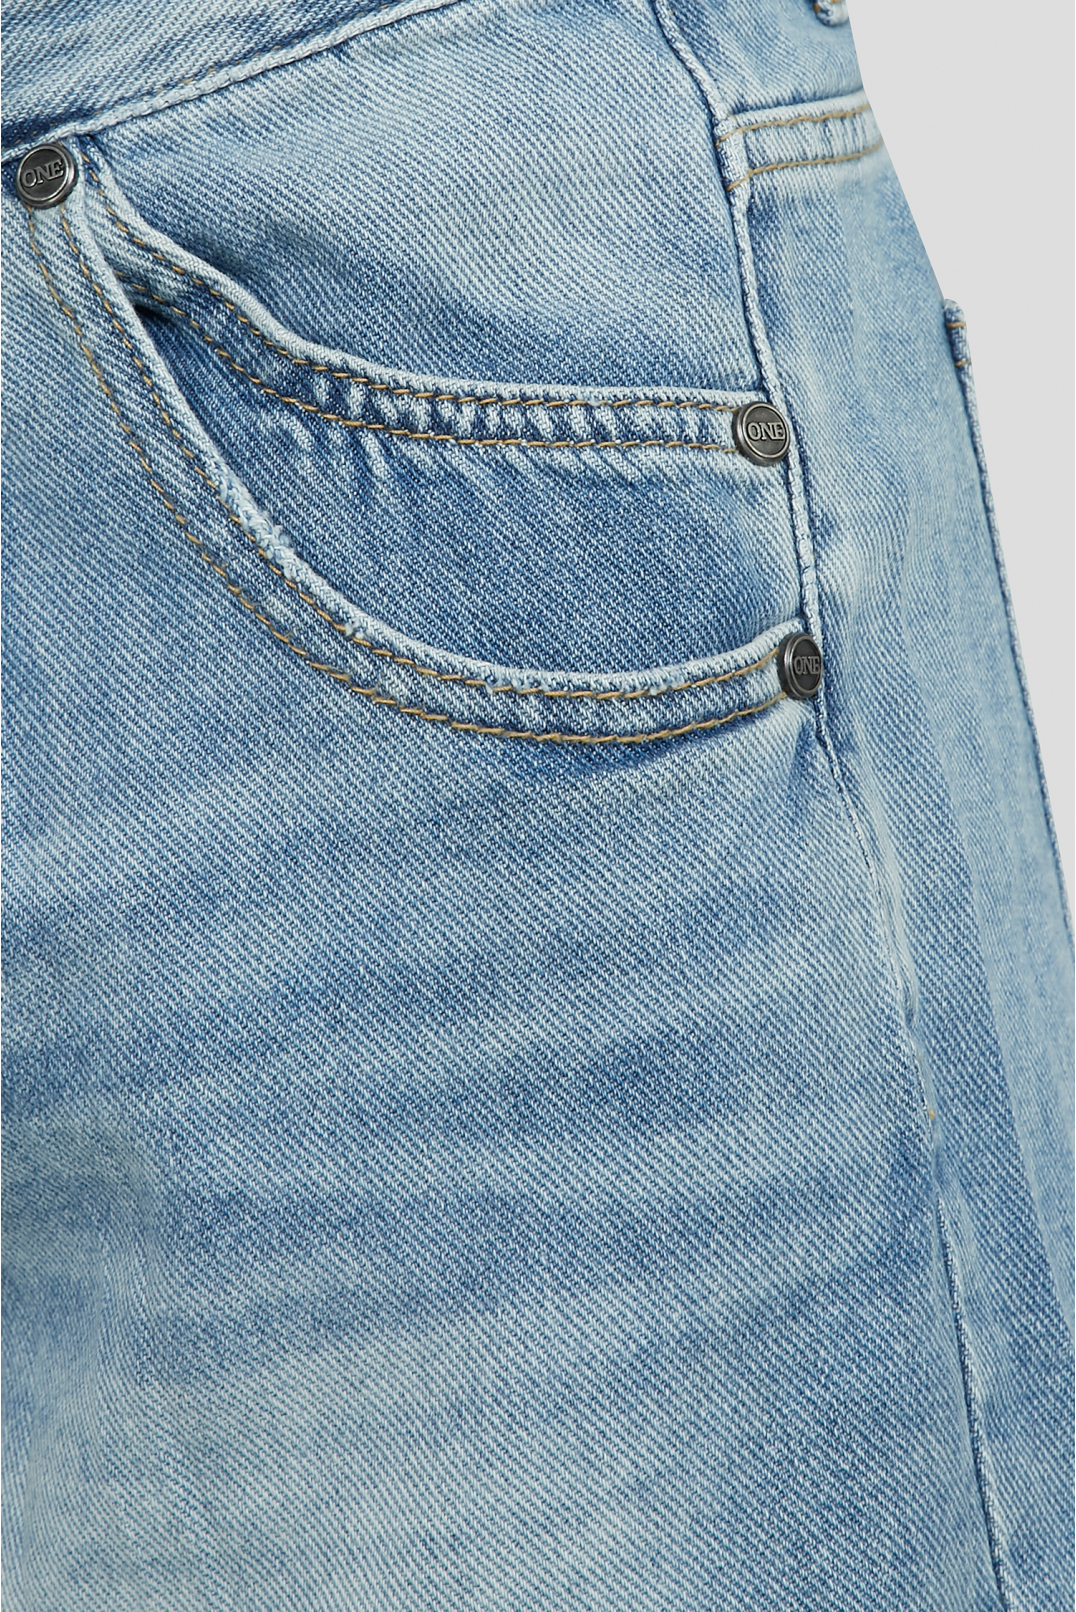 Жіночі сині джинсові шорти - 3